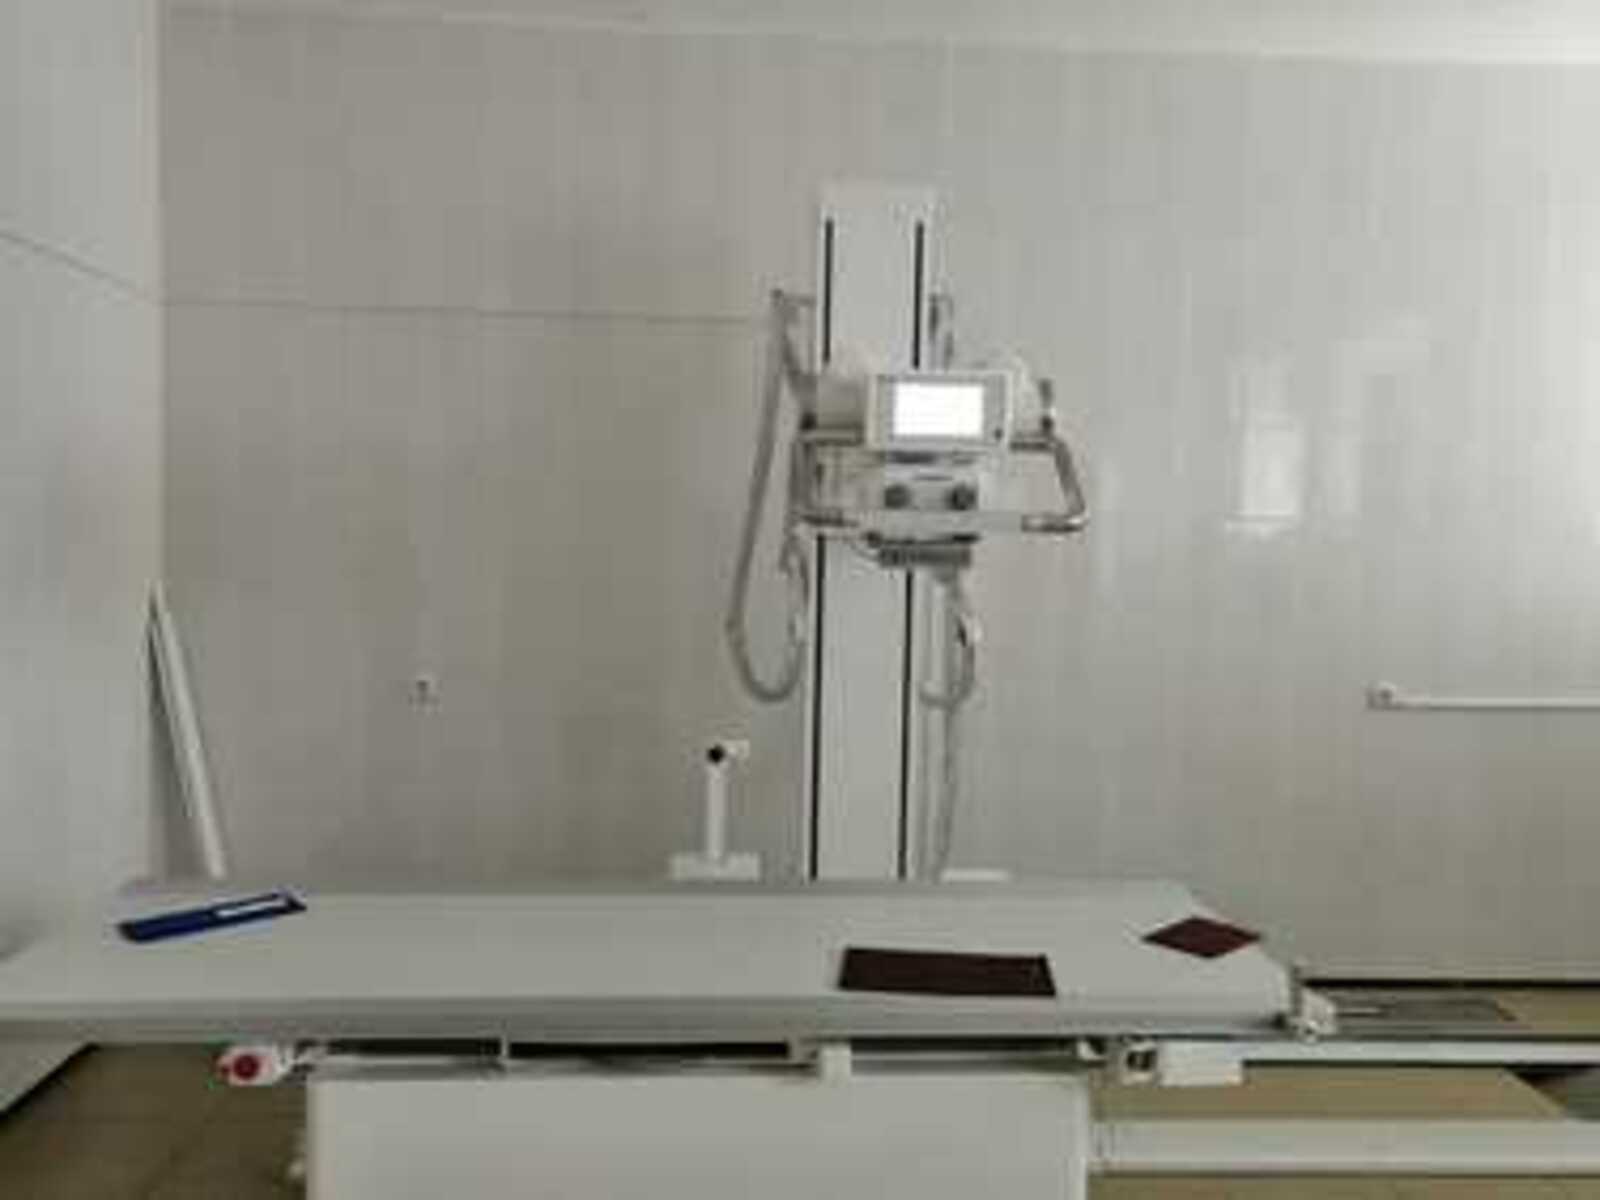 В Акьярской больнице Башкортостана более 10 700 пациентов обследованы на новом цифровом рентгеновском аппарате